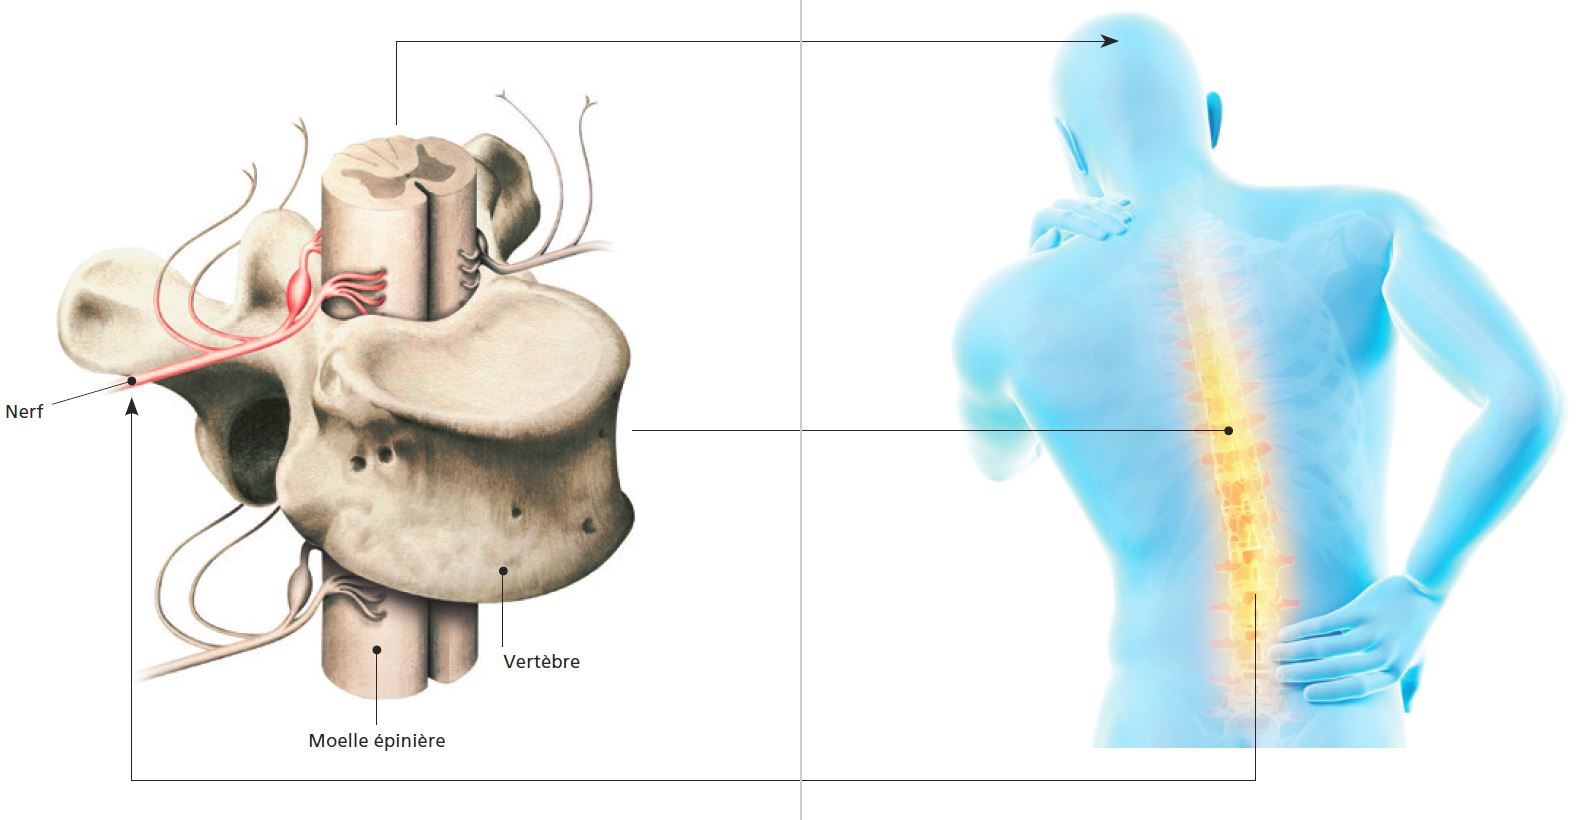 Dos-vertebre-nerfs-structure.JPG